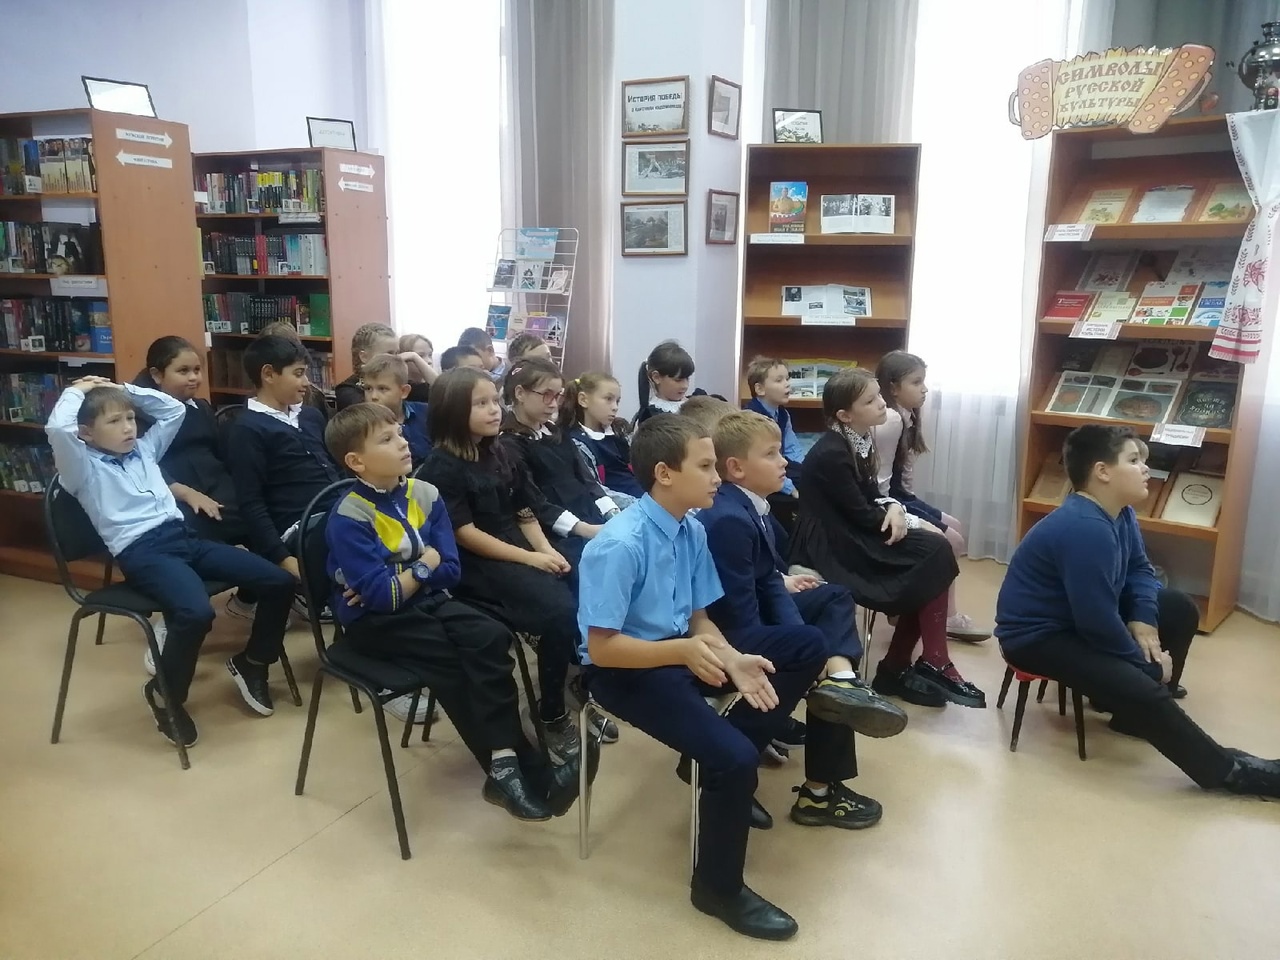 В Пушкарской поселенческой библиотеке состоялось познавательное мероприятие «Покорение бесконечности»